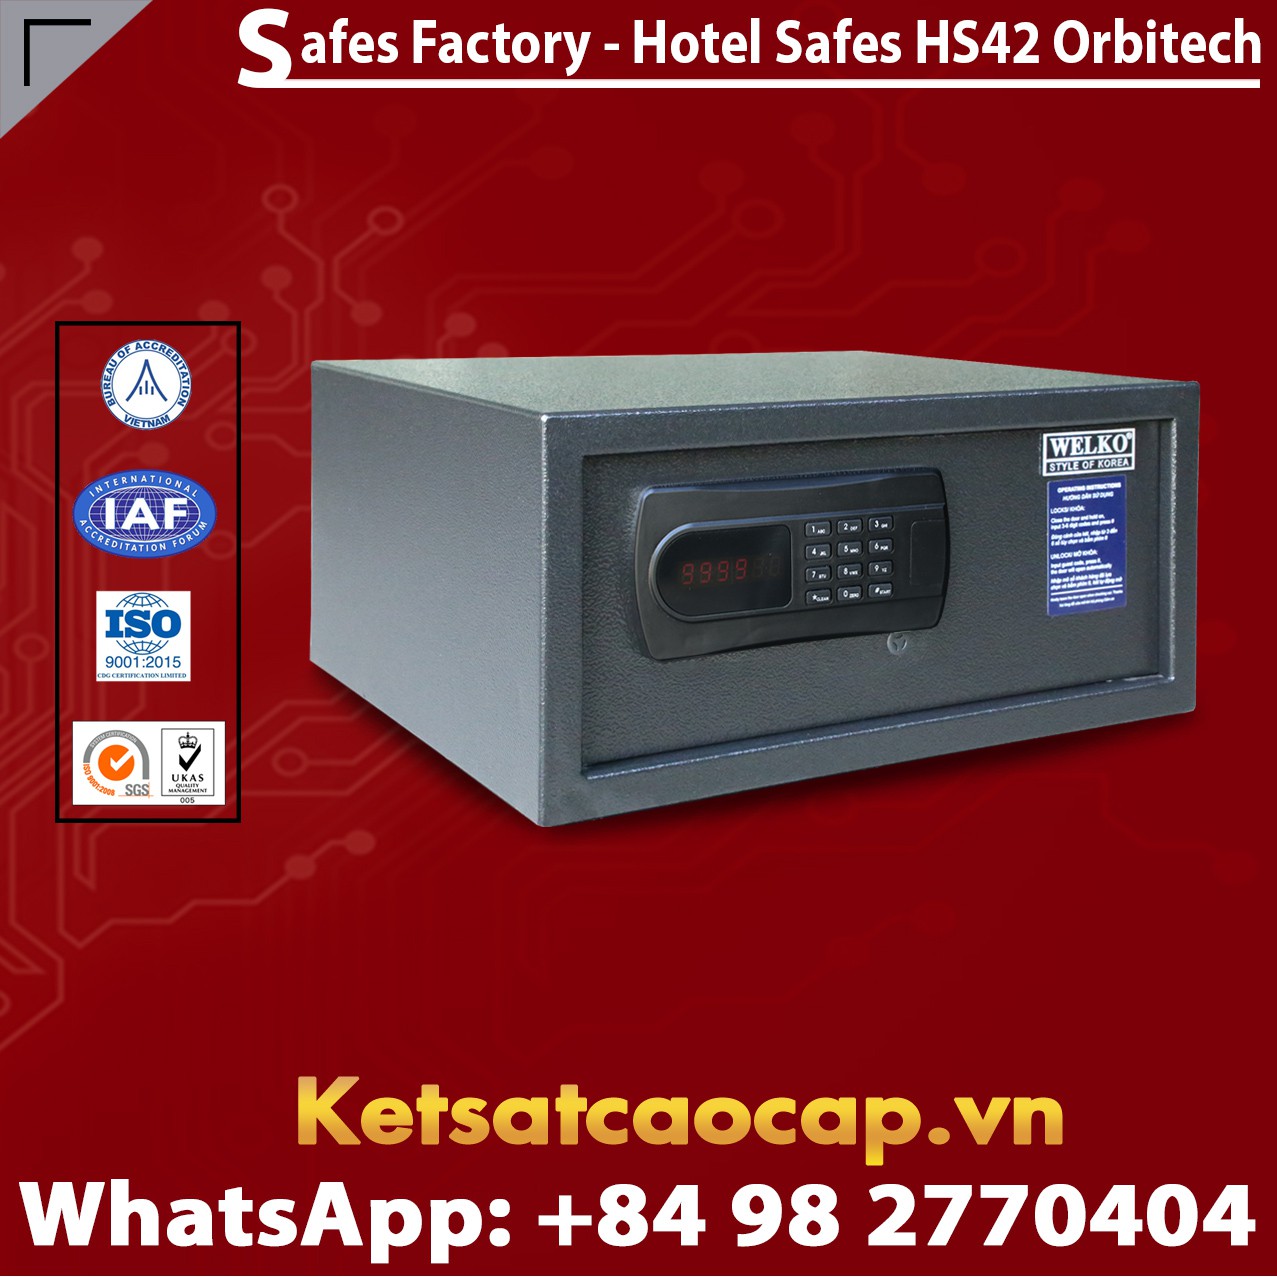 Safe in Hotel WELKO HS42 Orbitech